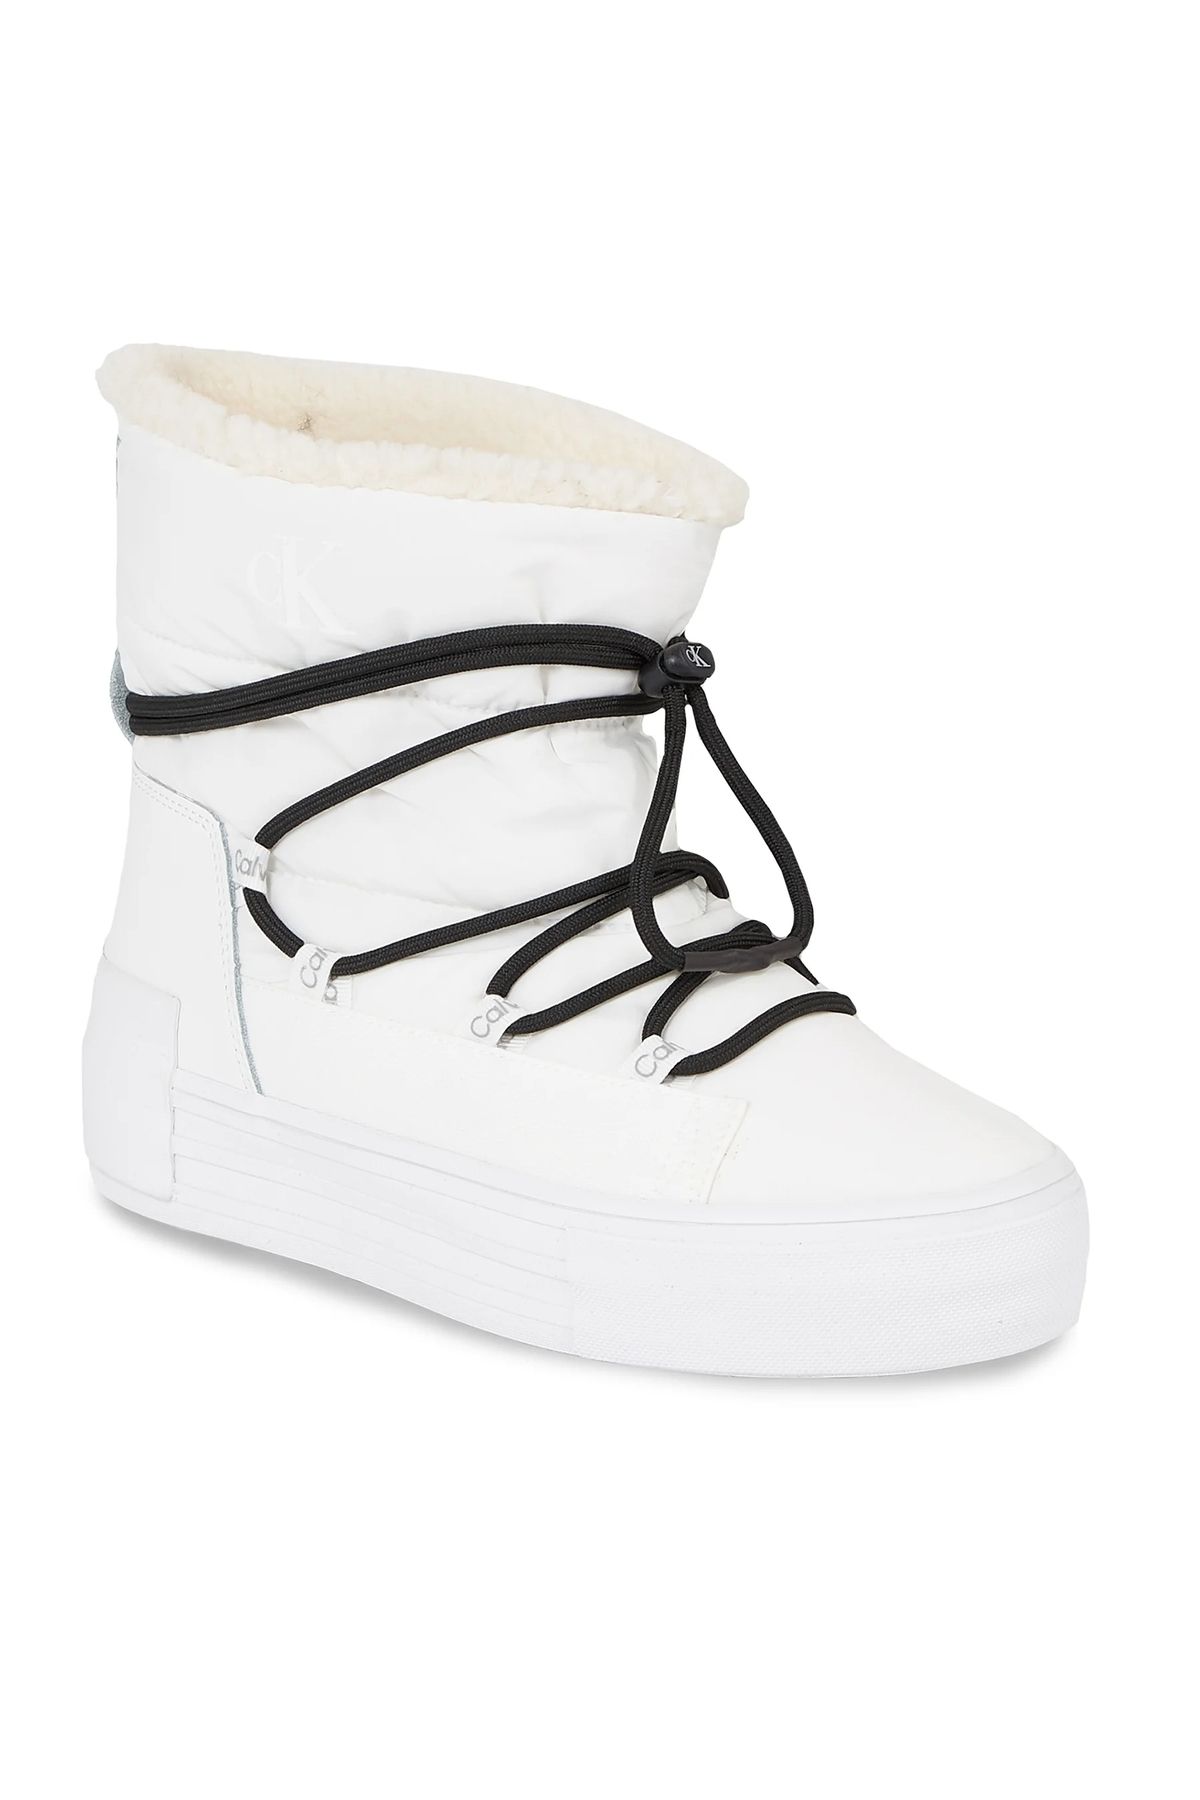 Calvin Klein Bold Vulc Flatf Snow Boot Wn